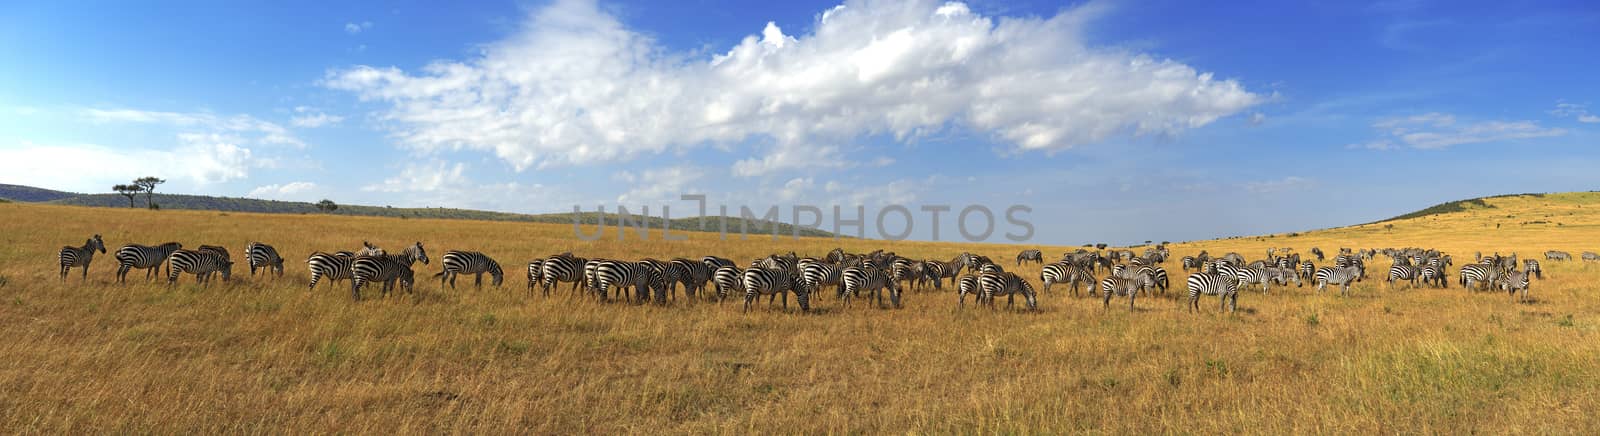 Zebras in a row walking in the savannah in Africa by byrdyak